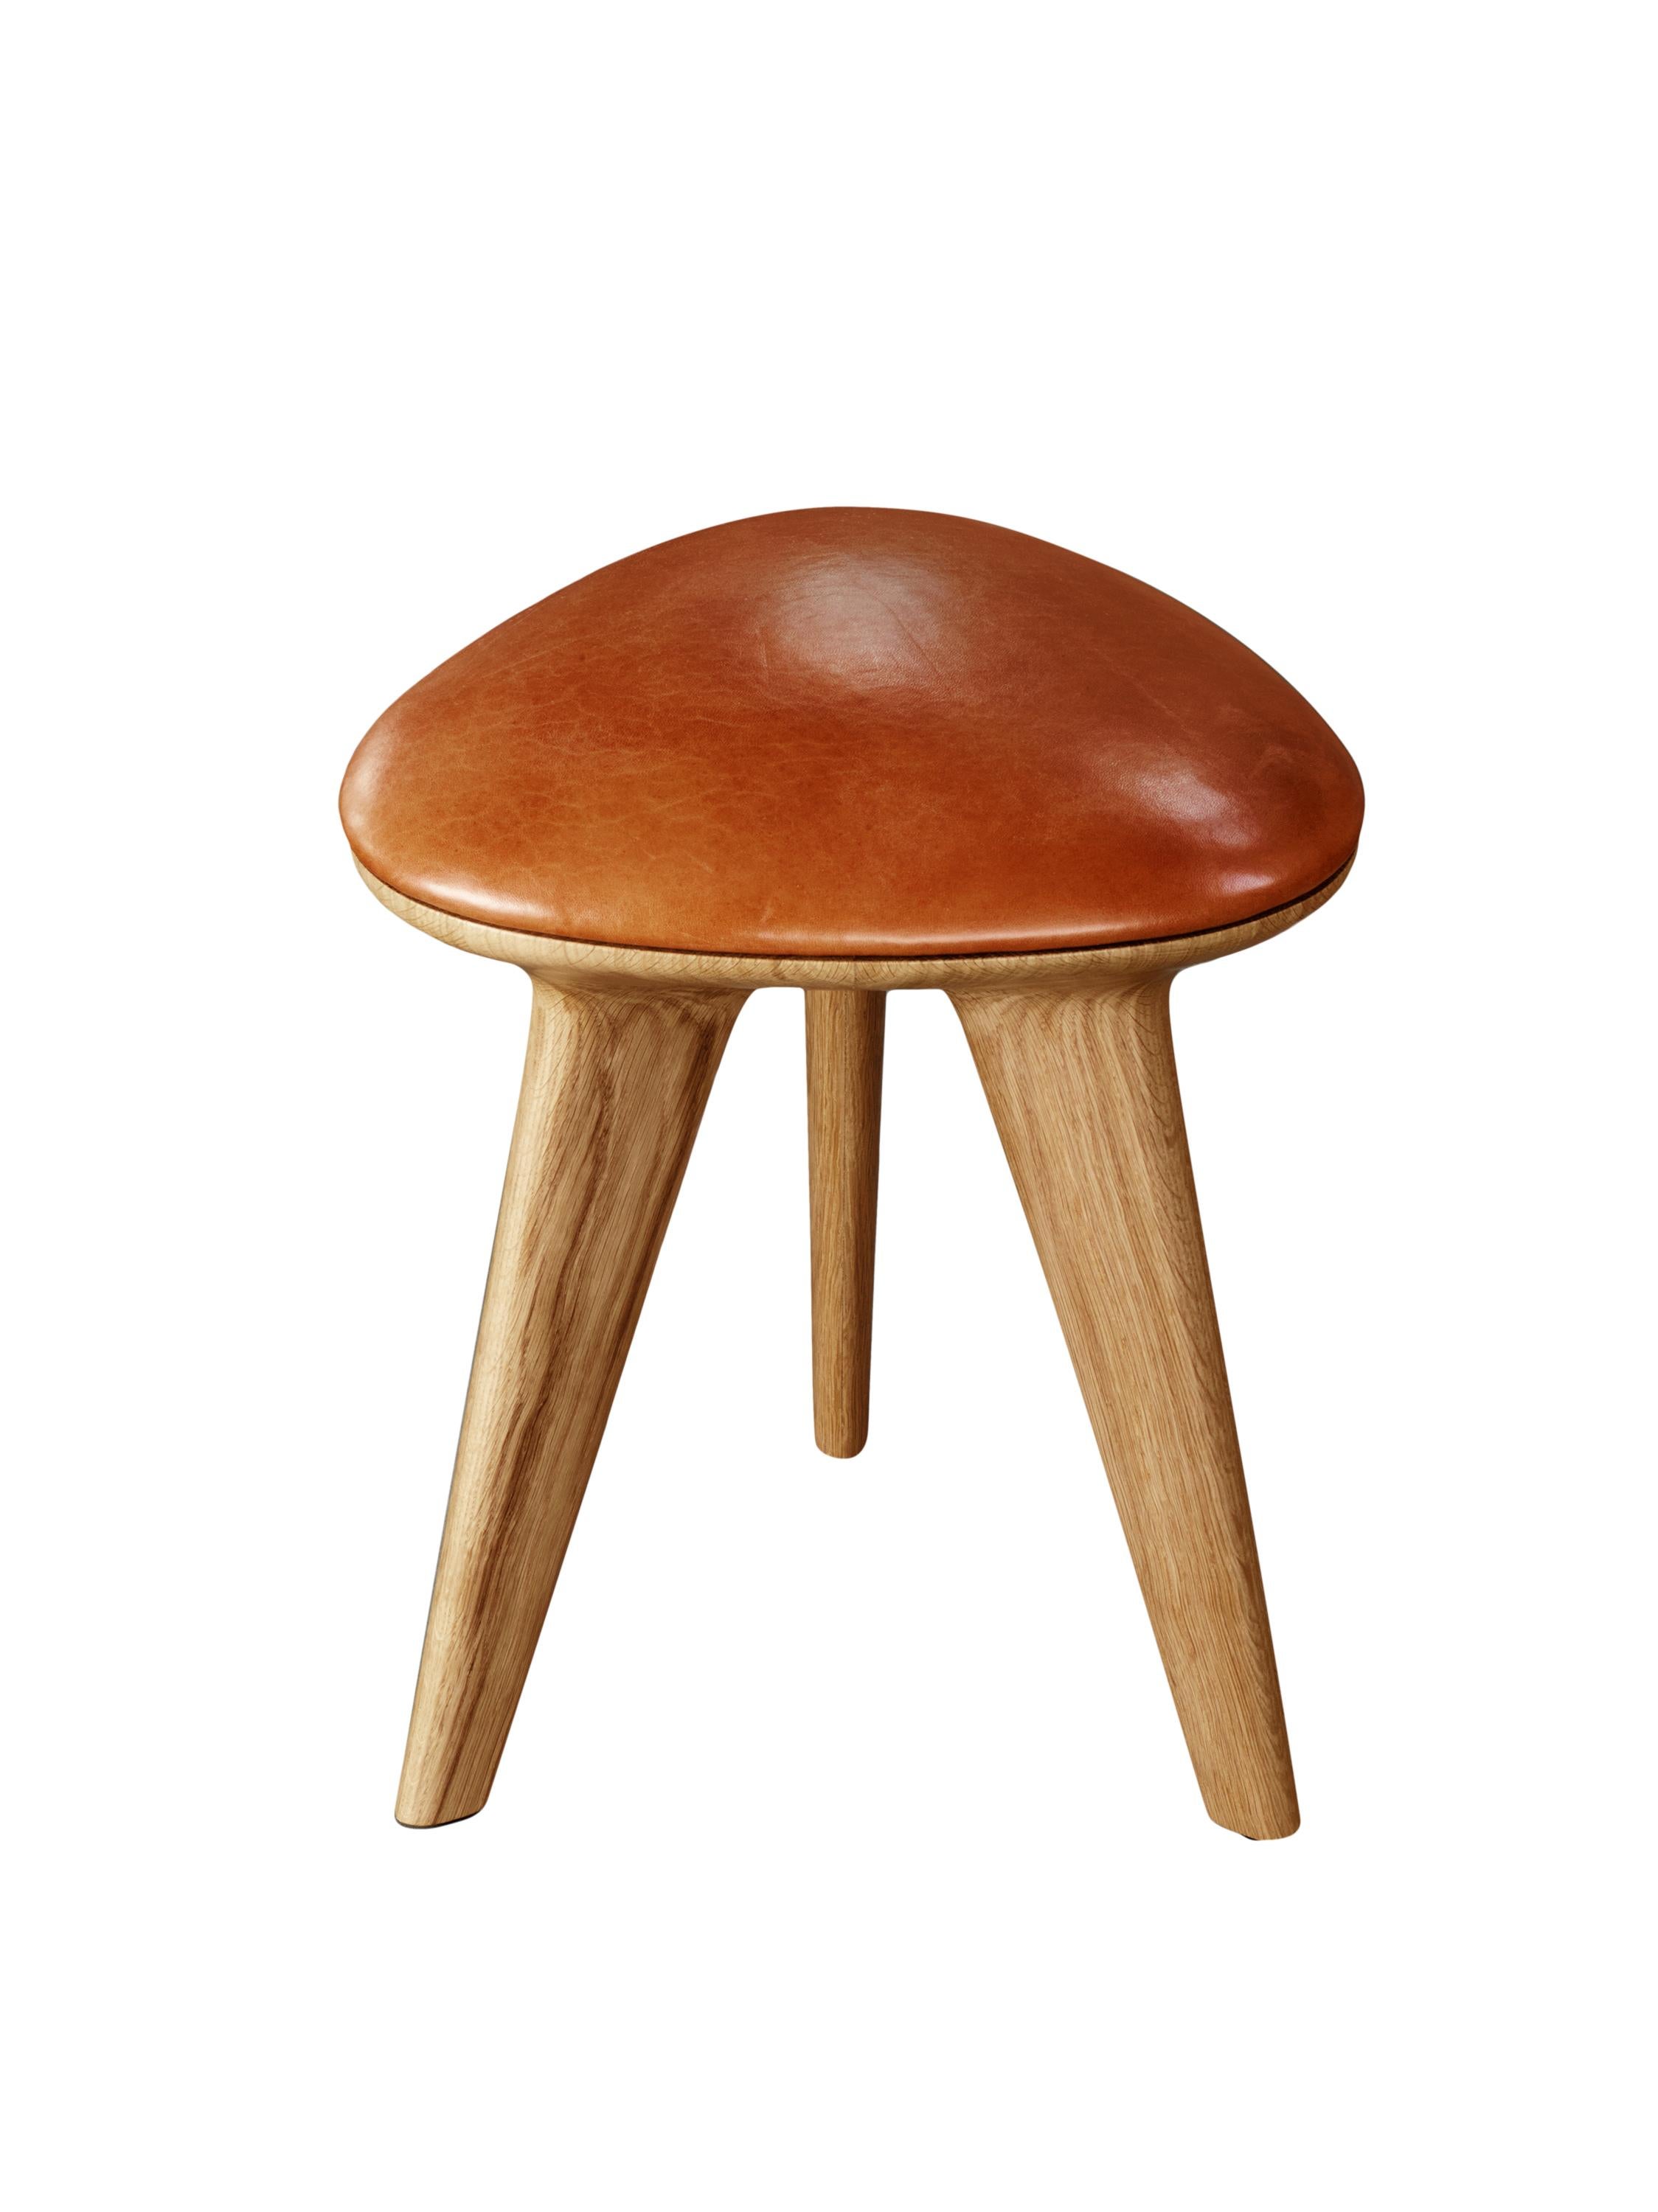 roto table stool